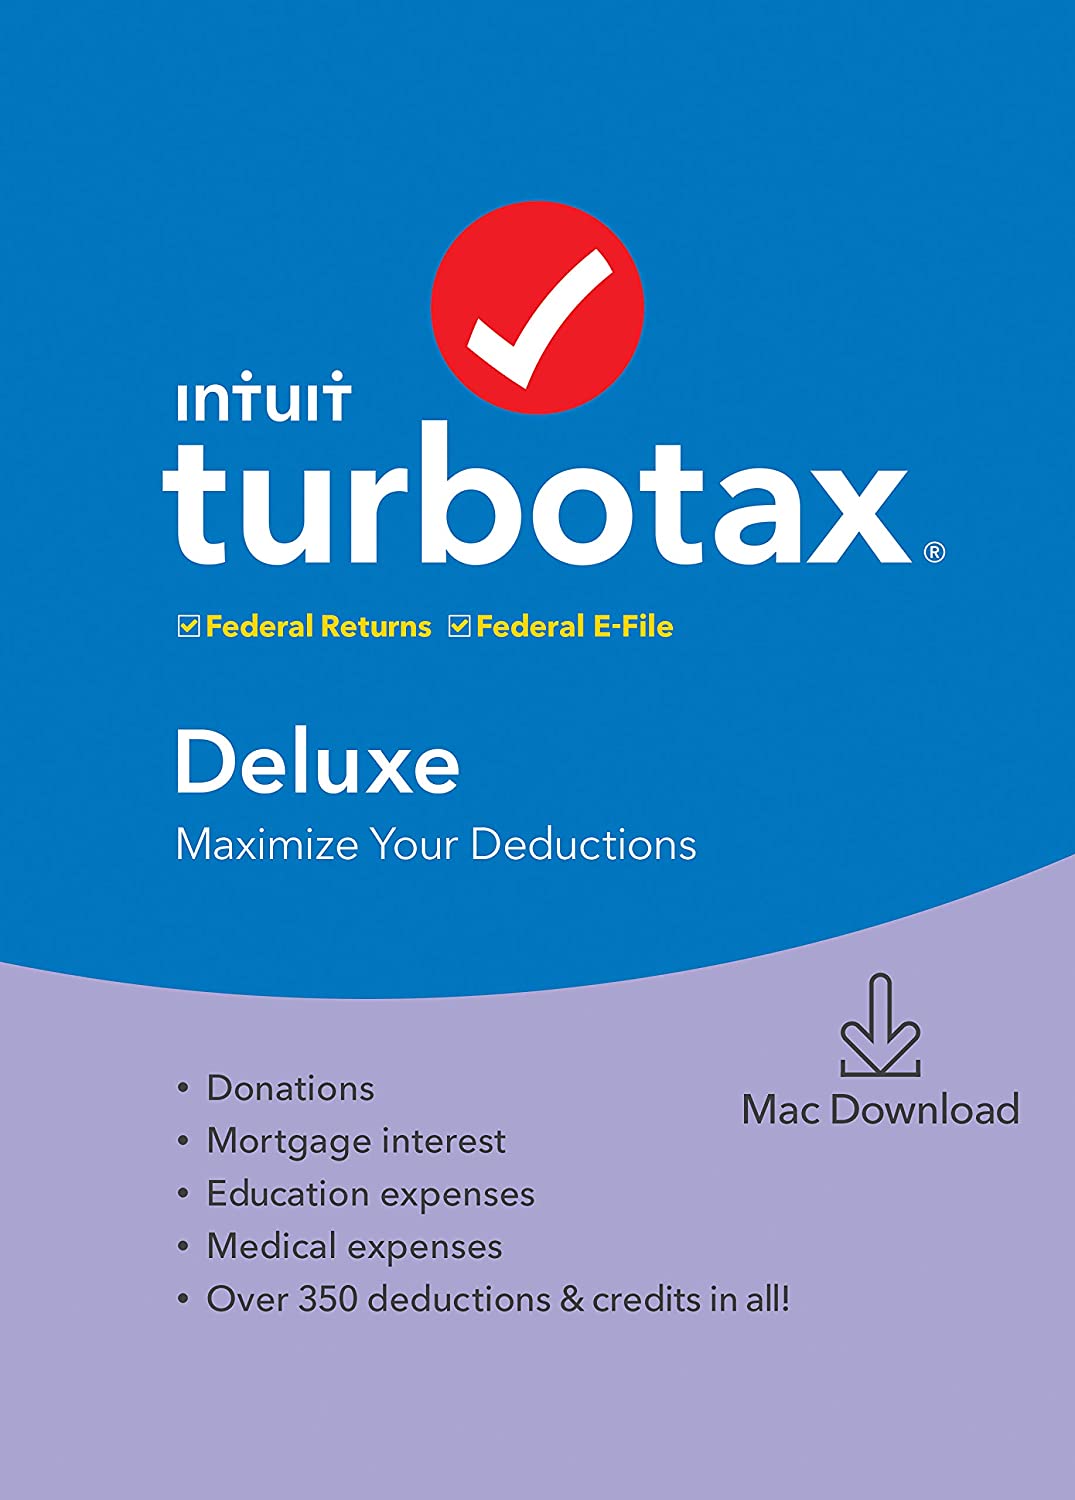 Turbotax deluxe mac download newegg download